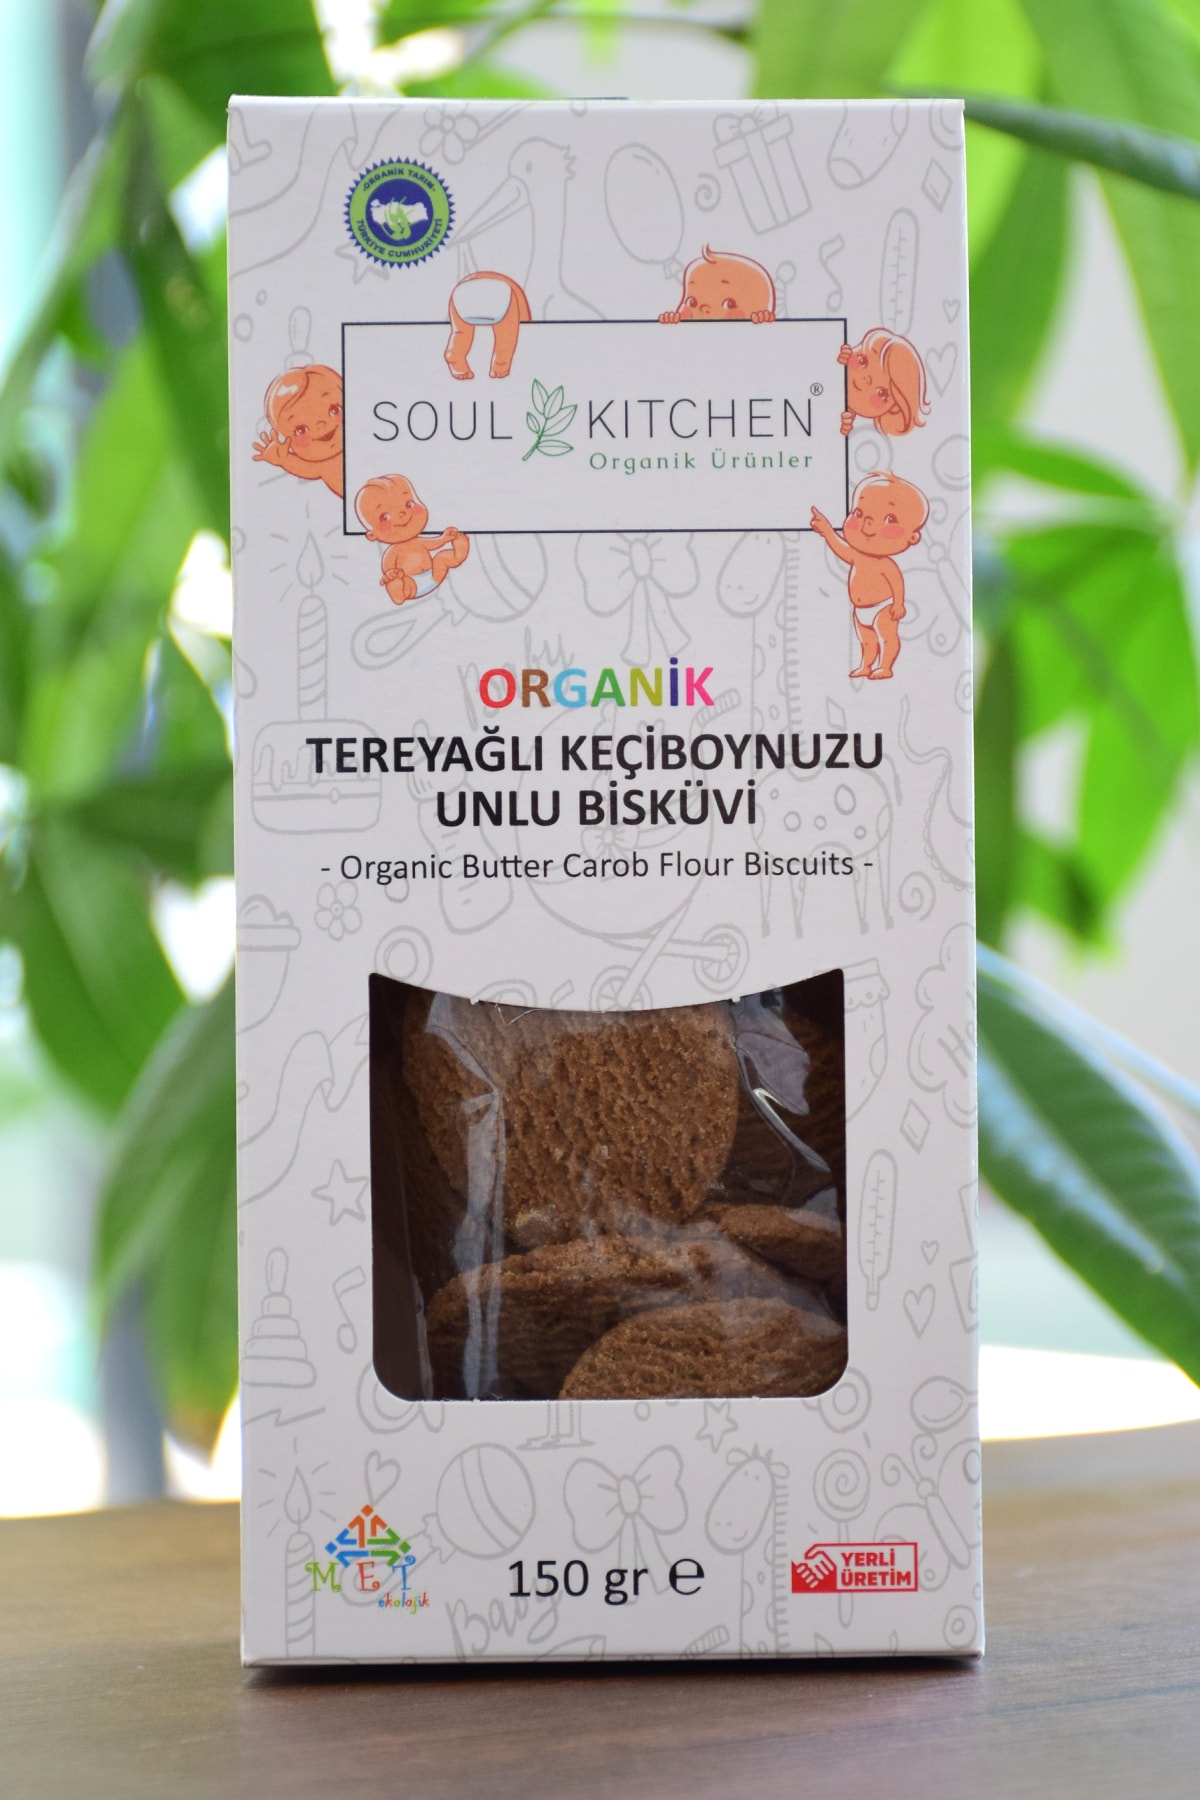 Soul Kitchen Organik Ürünler Sertifikalı Organik Bebek Tereyağlı Keçiboynuzu Unlu Bisküvi 150gr